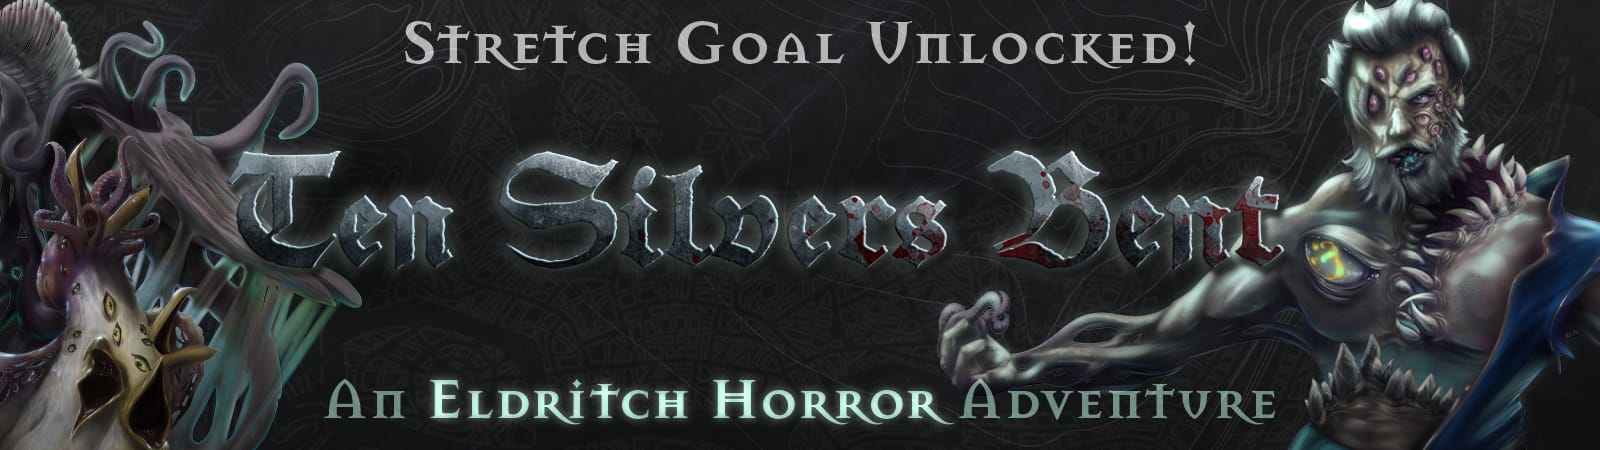 Title: Ten Silvers Bent. Subtitle: An Eldritch Horror Adventure. Supertext: Stretch Goal Unlocked!